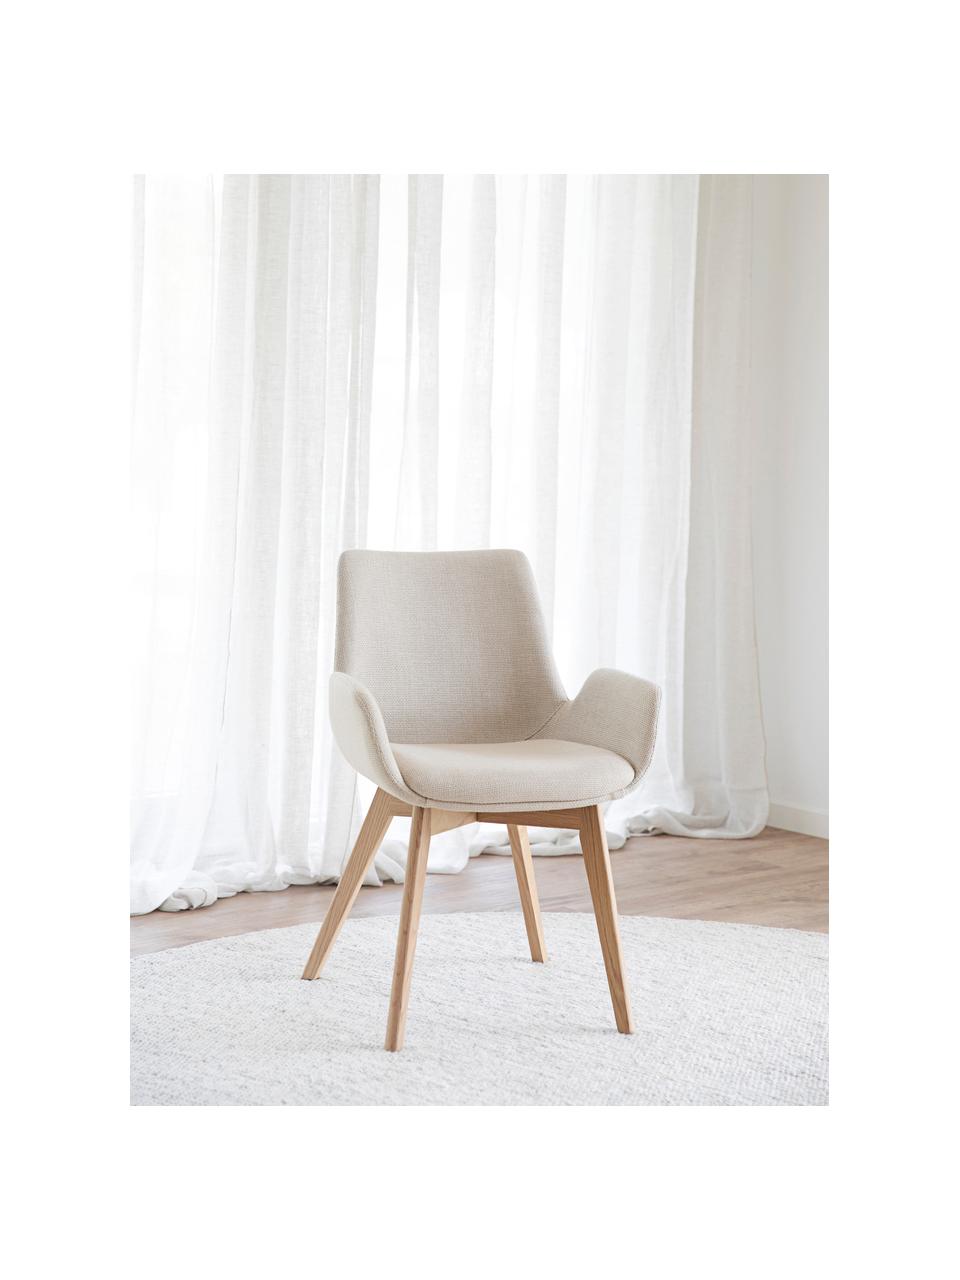 Chaises à accoudoirs Drimsdale, 2 pièces, Tissu beige clair, bois de chêne, larg. 59 x haut. 59 cm